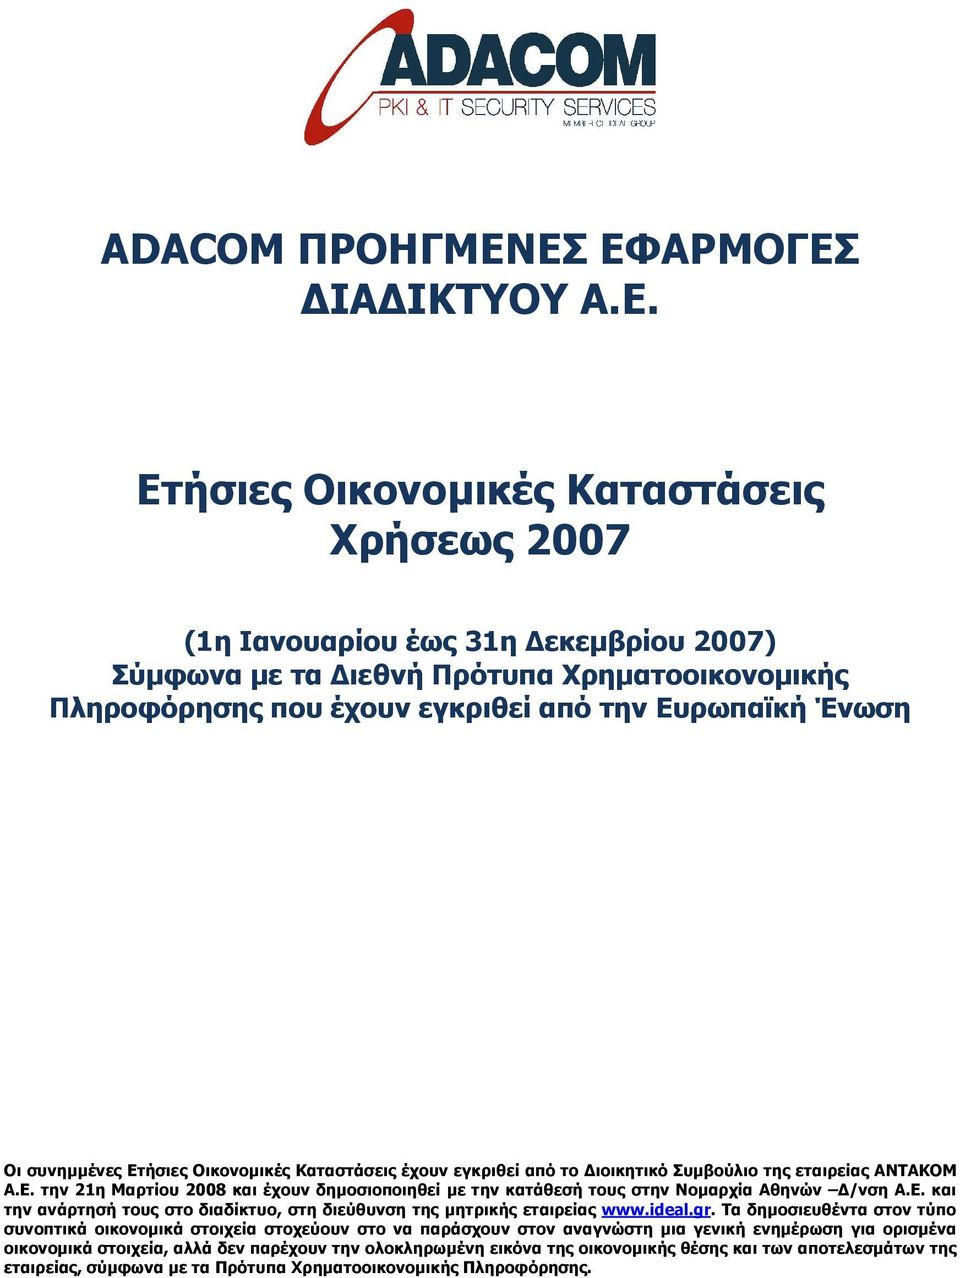 συνηµµένες Ετήσιες Οικονοµικές Καταστάσεις έχουν εγκριθεί από το ιοικητικό Συµβούλιο της εταιρείας ΑΝΤΑΚΟΜ Α.Ε. την 21η Μαρτίου 2008 και έχουν δηµοσιοποιηθεί µε την κατάθεσή τους στην Νοµαρχία Αθηνών /νση Α.